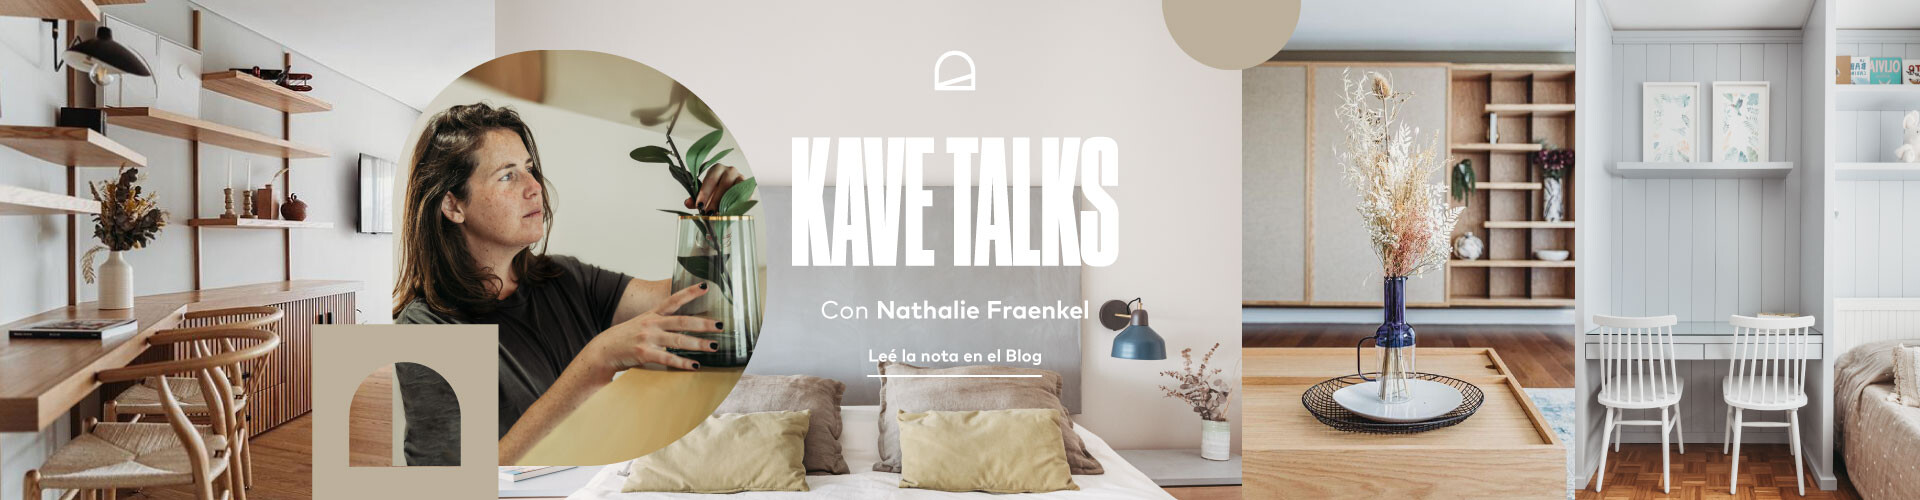 Kave Talk con Nathalie Fraenkel